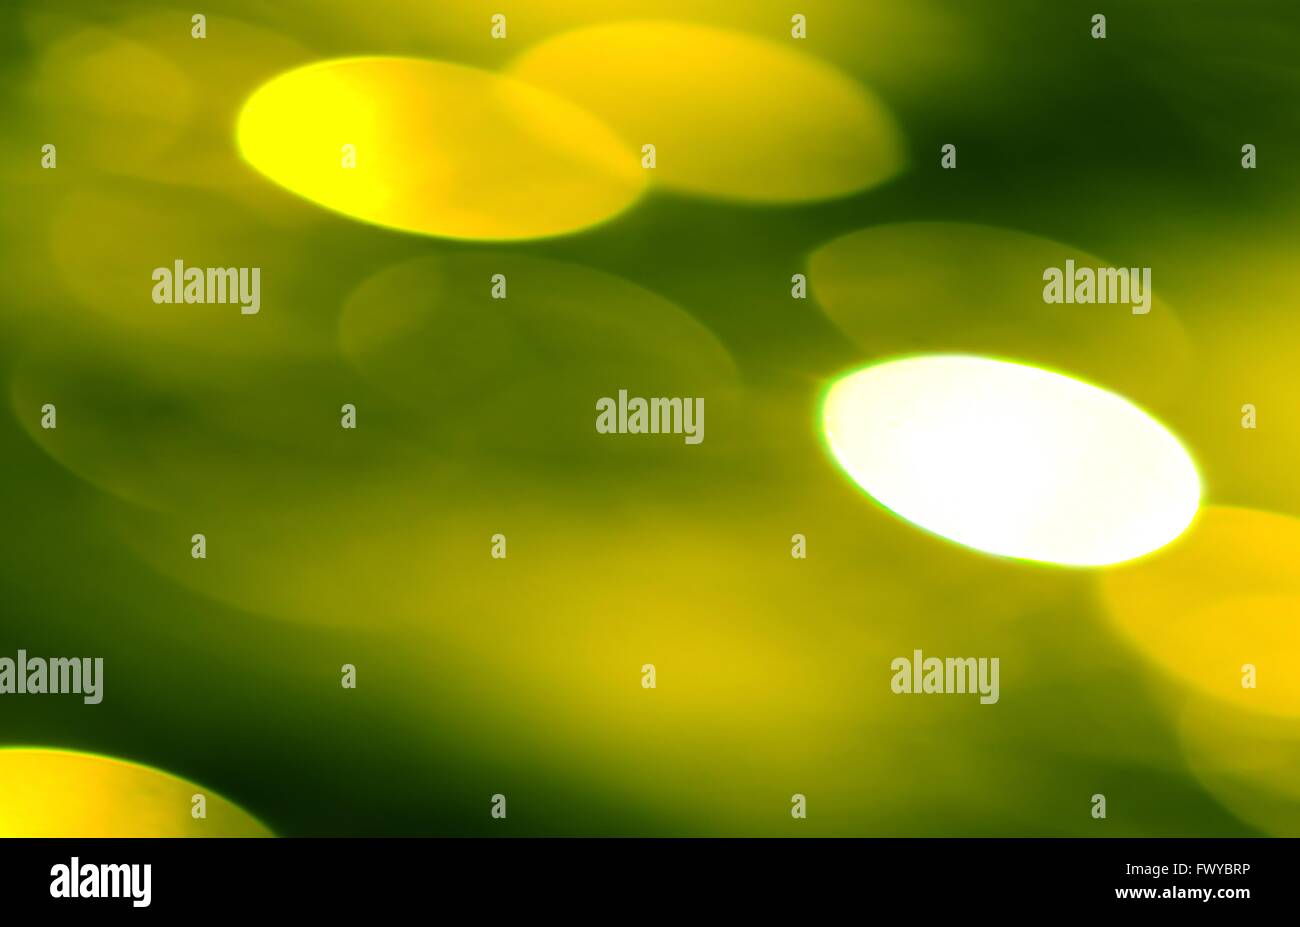 Grün gelb Kreis Form als Weihnachten Hintergrund leuchtet. Stockfoto